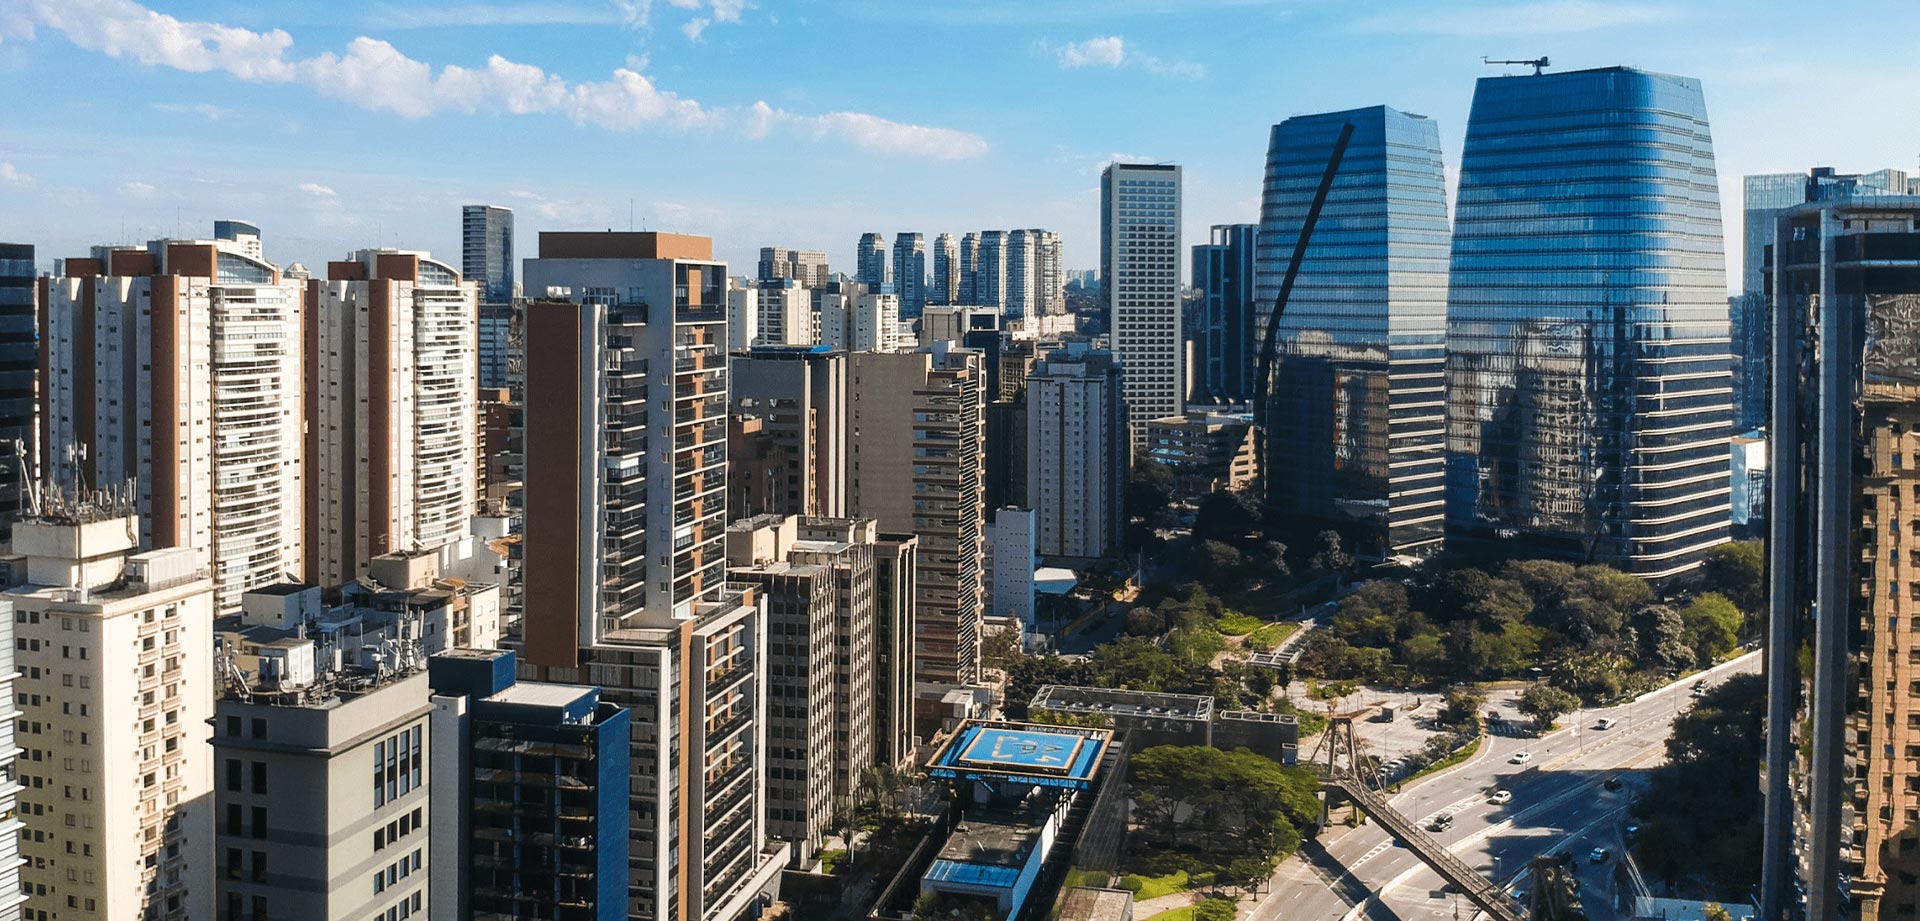 A regulamentação da outorga onerosa pela prefeitura de São Paulo promete destravar novos lançamentos imobiliários. Saiba como o decreto afeta o setor e a destinação dos recursos.